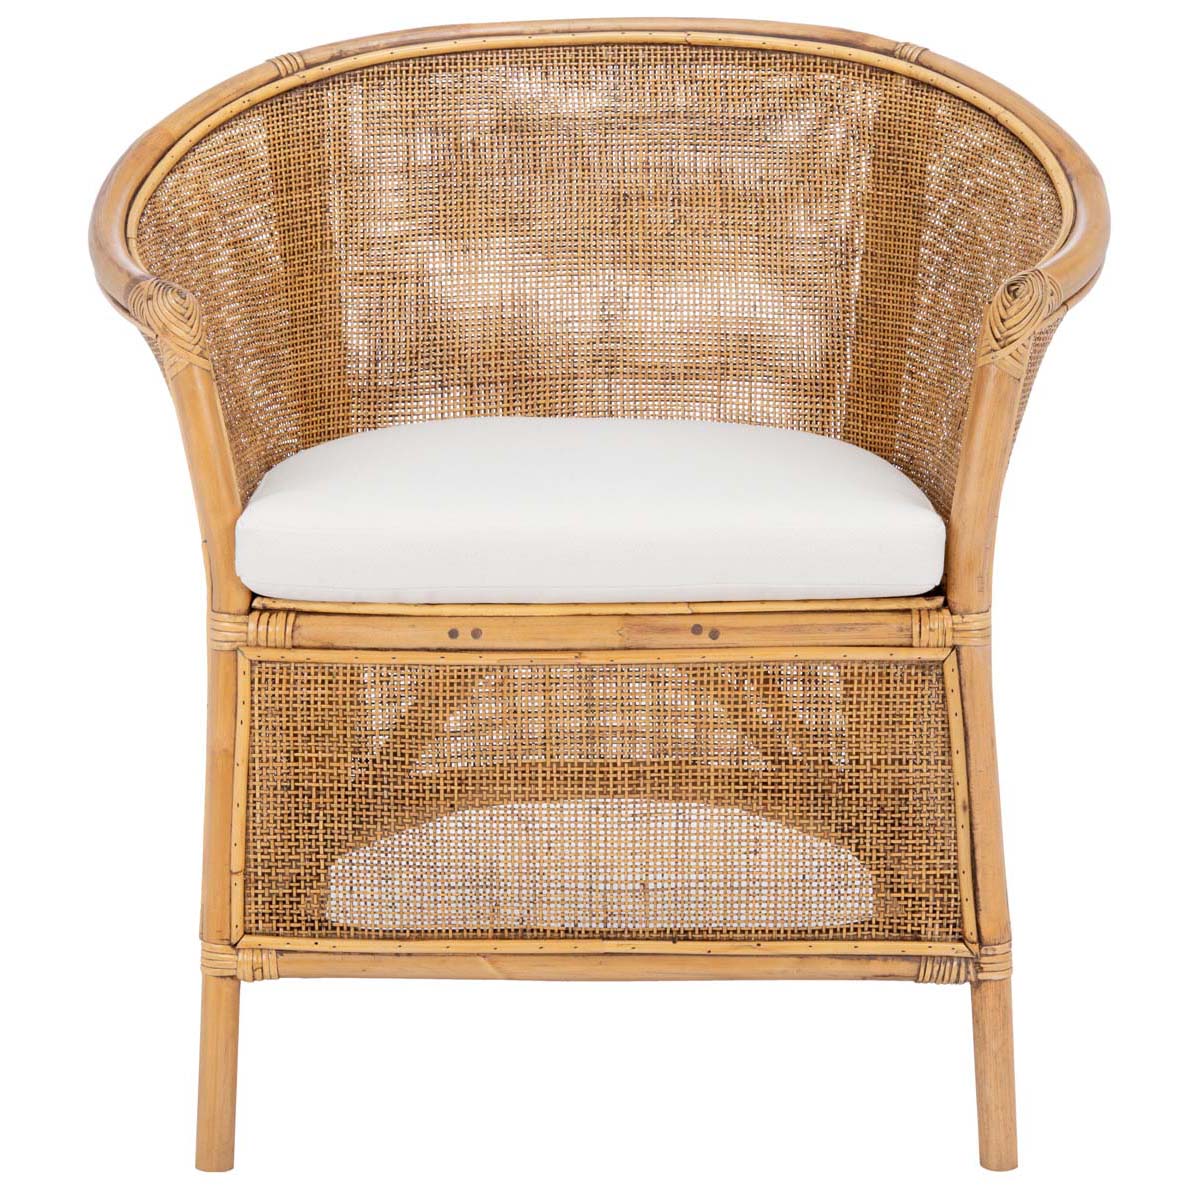 Safavieh Jessica Rattan Accent Chair W/ Cushion , ACH6519 - Honey Brown Wash/White